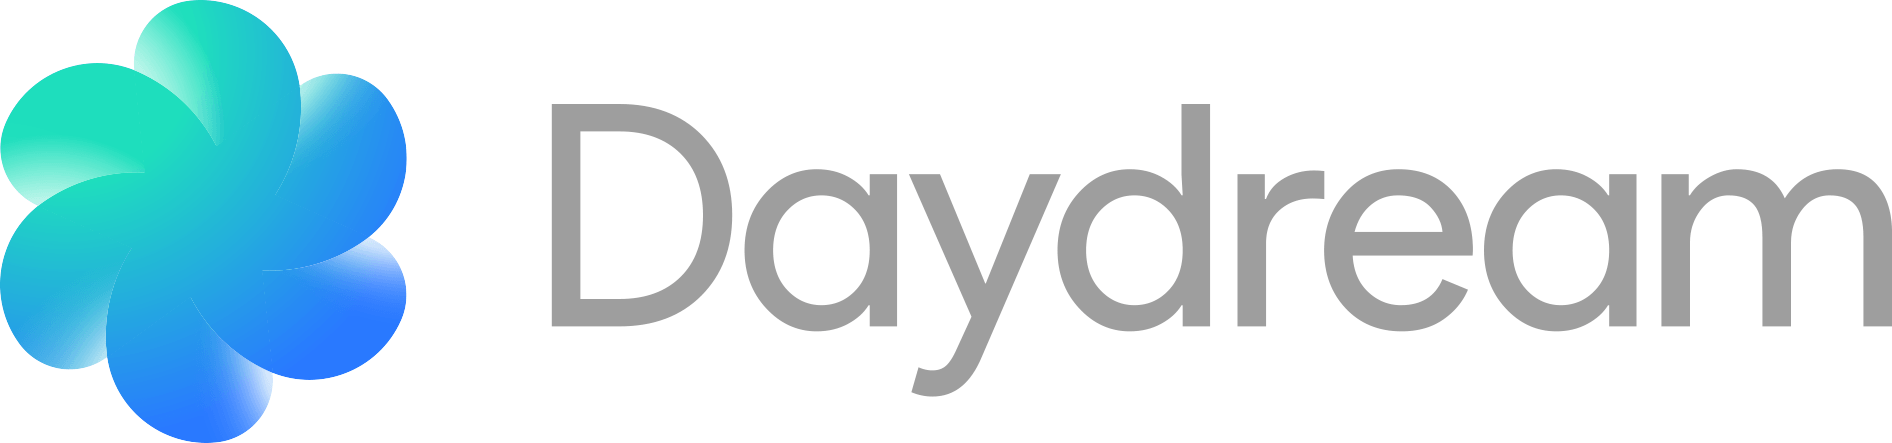 Daydream Logo - Daydream | Logopedia | FANDOM powered by Wikia